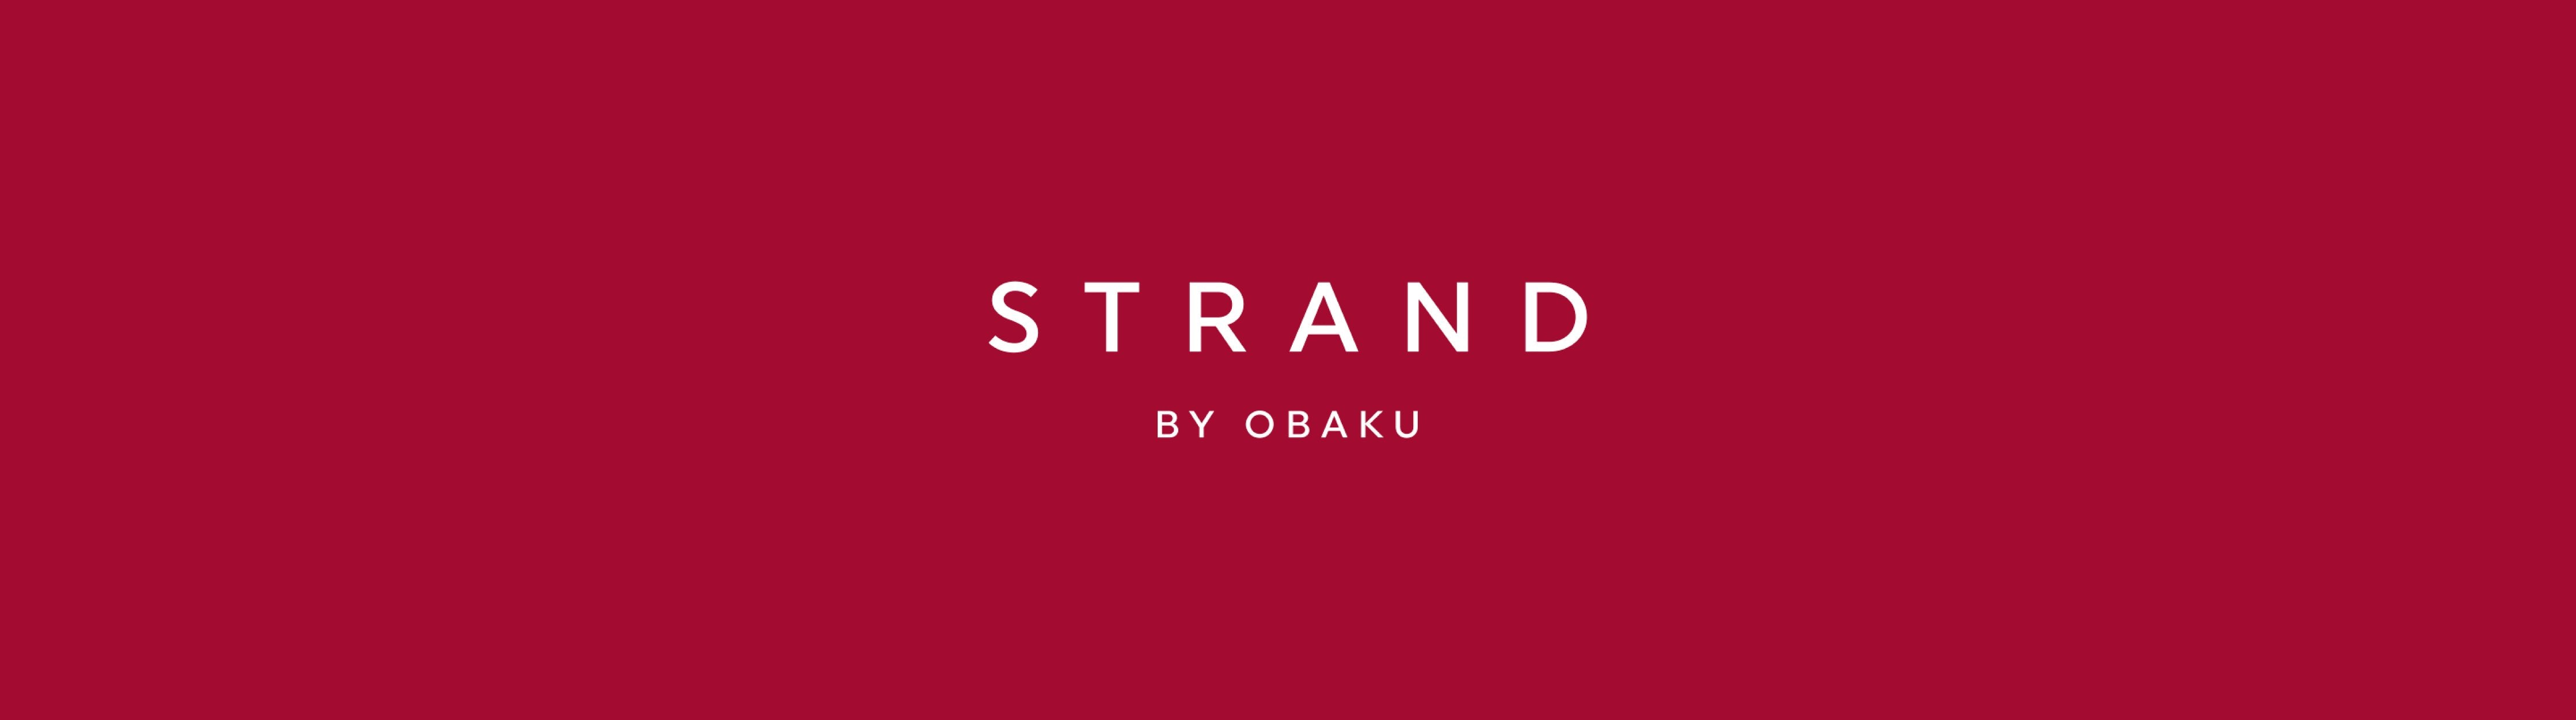 Strand By Obaku